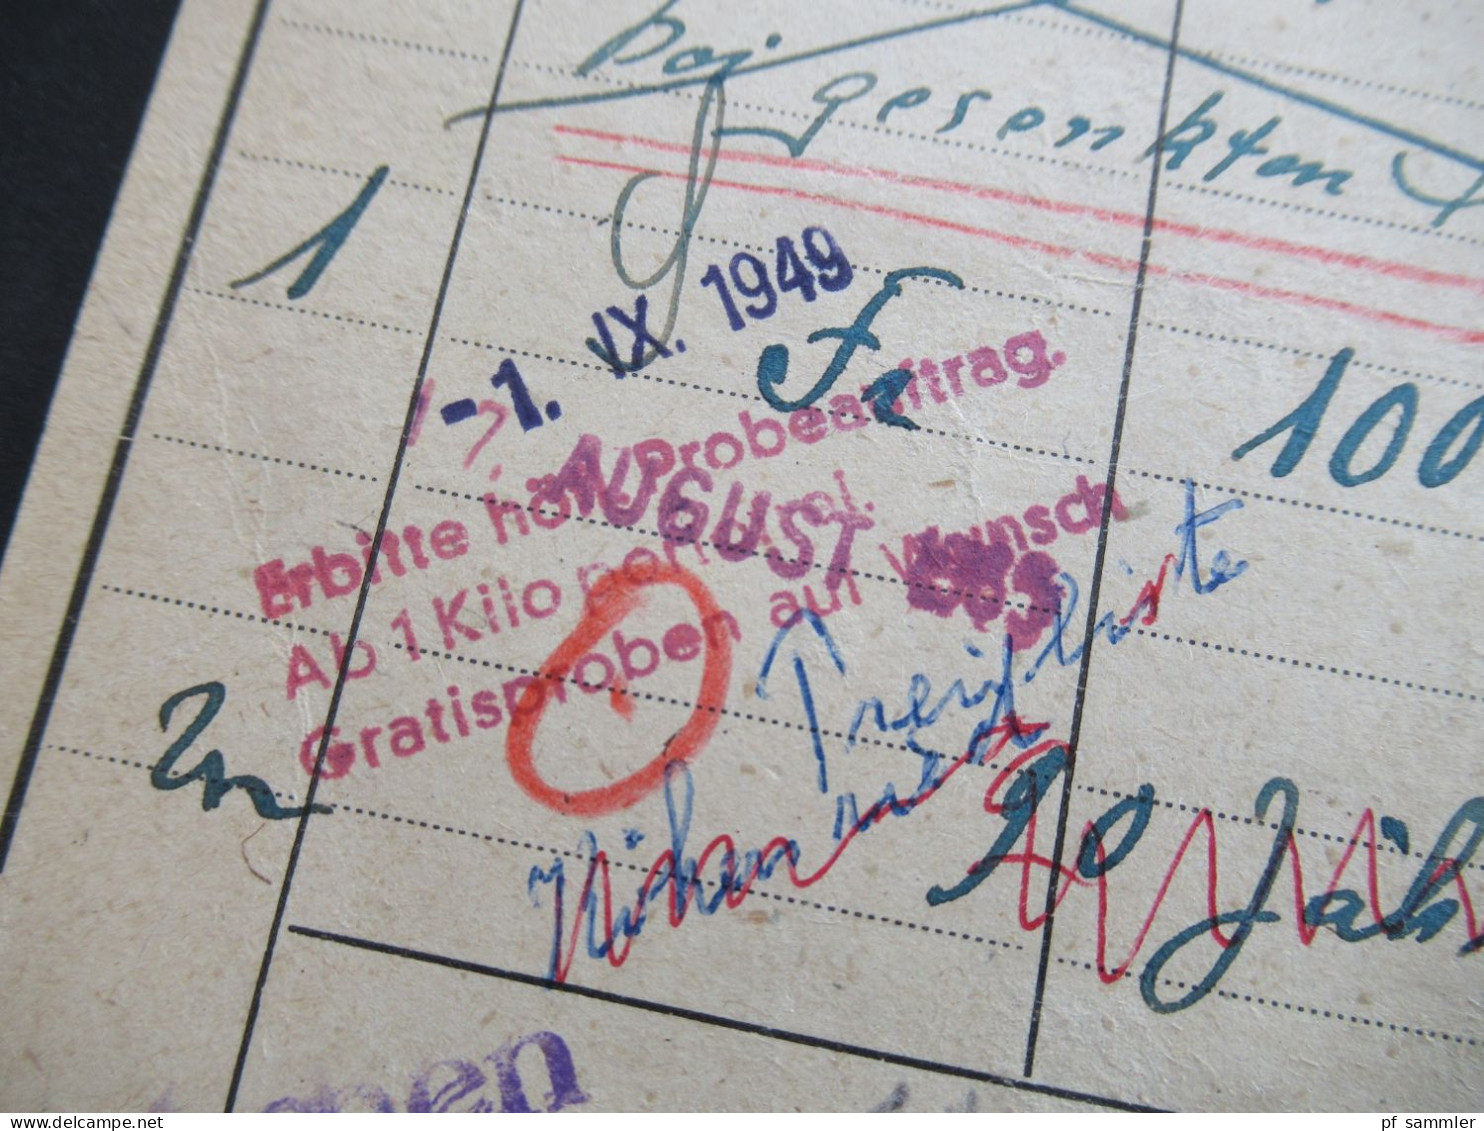 Bizone 1948 Nr.40 I EF Drucksache Antwortkarte Freistempel Grafenau mit Marke überklebt! Porto bezahlt durch Freistempel